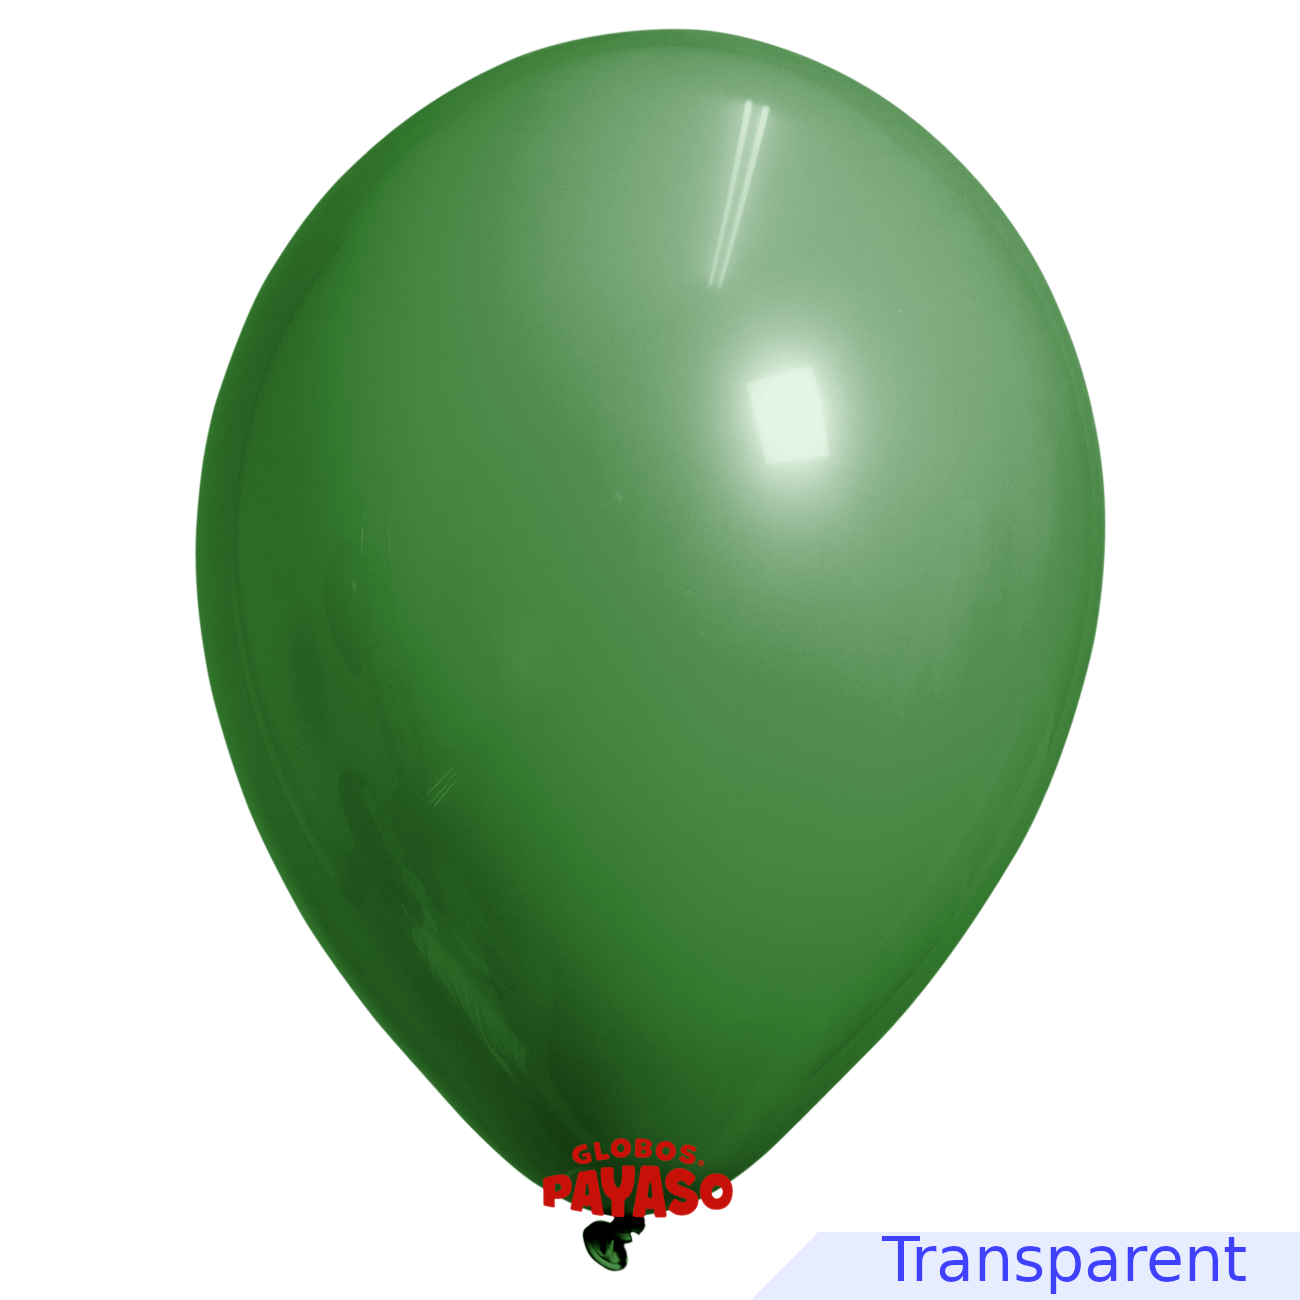 Globos Payaso / Unique 12" Vert Émeraude Translucide Décorateur Ballon